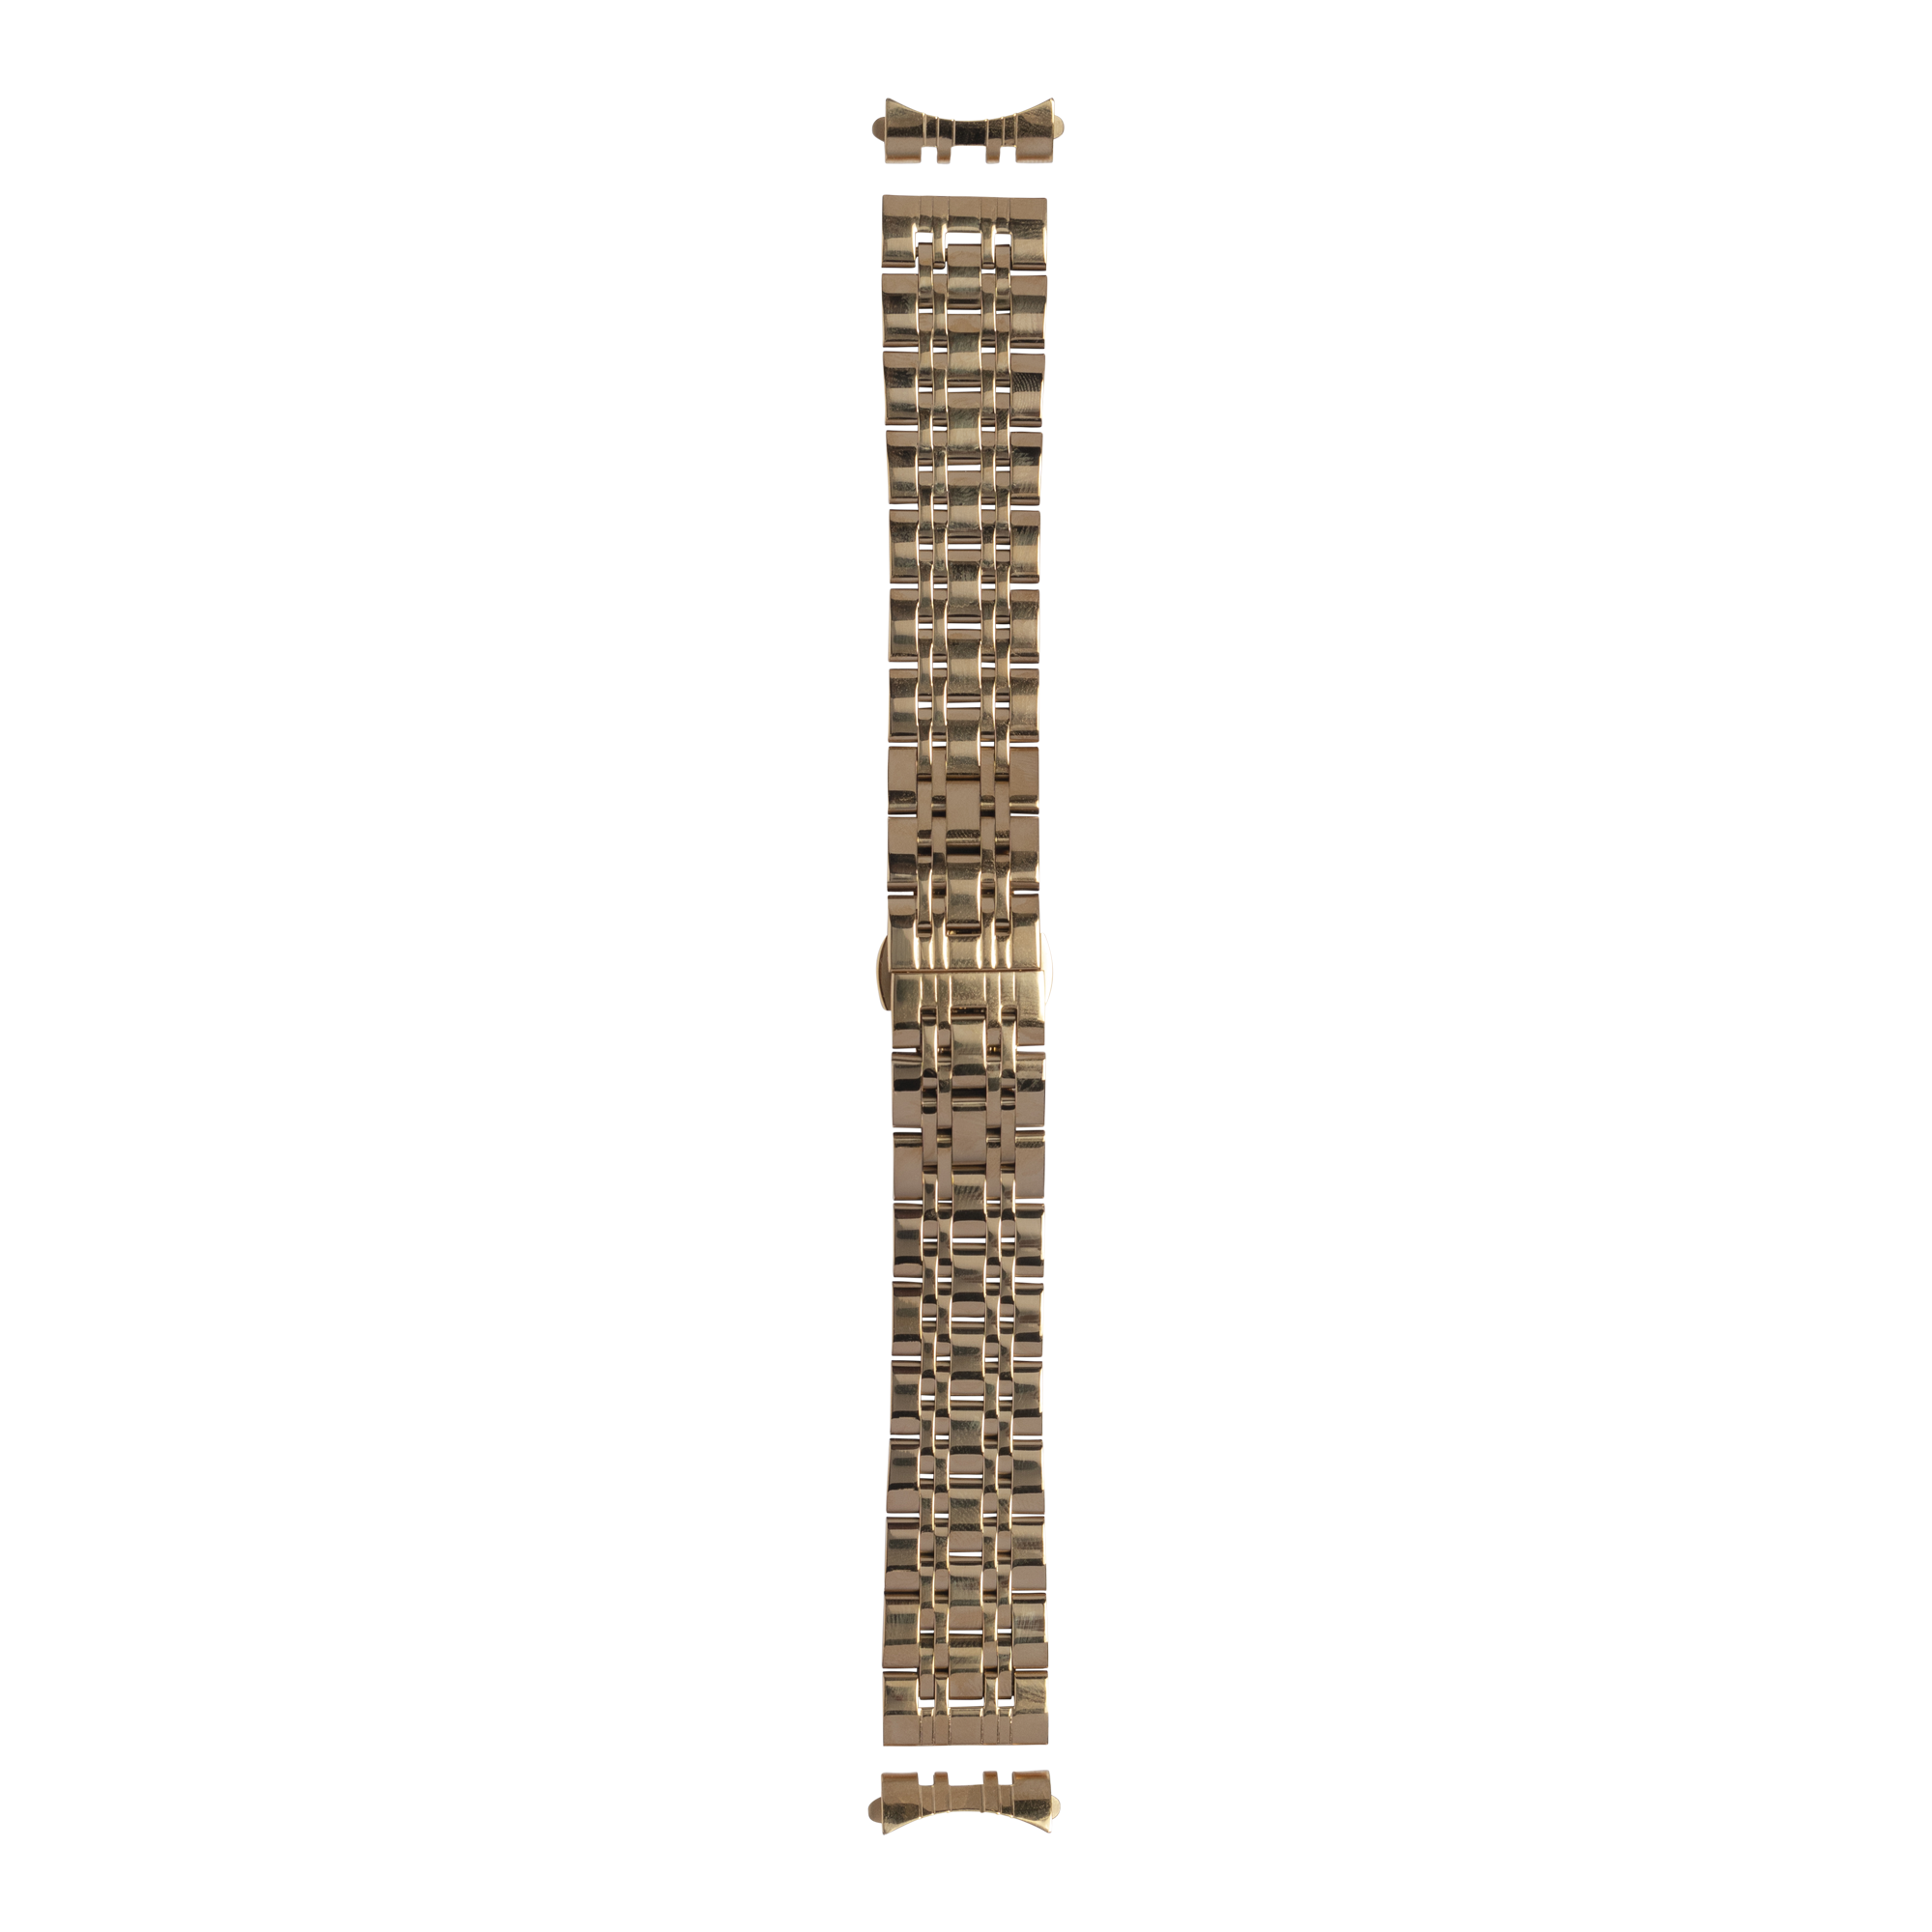 [Curved] Steel Bracelet 2 - Gold